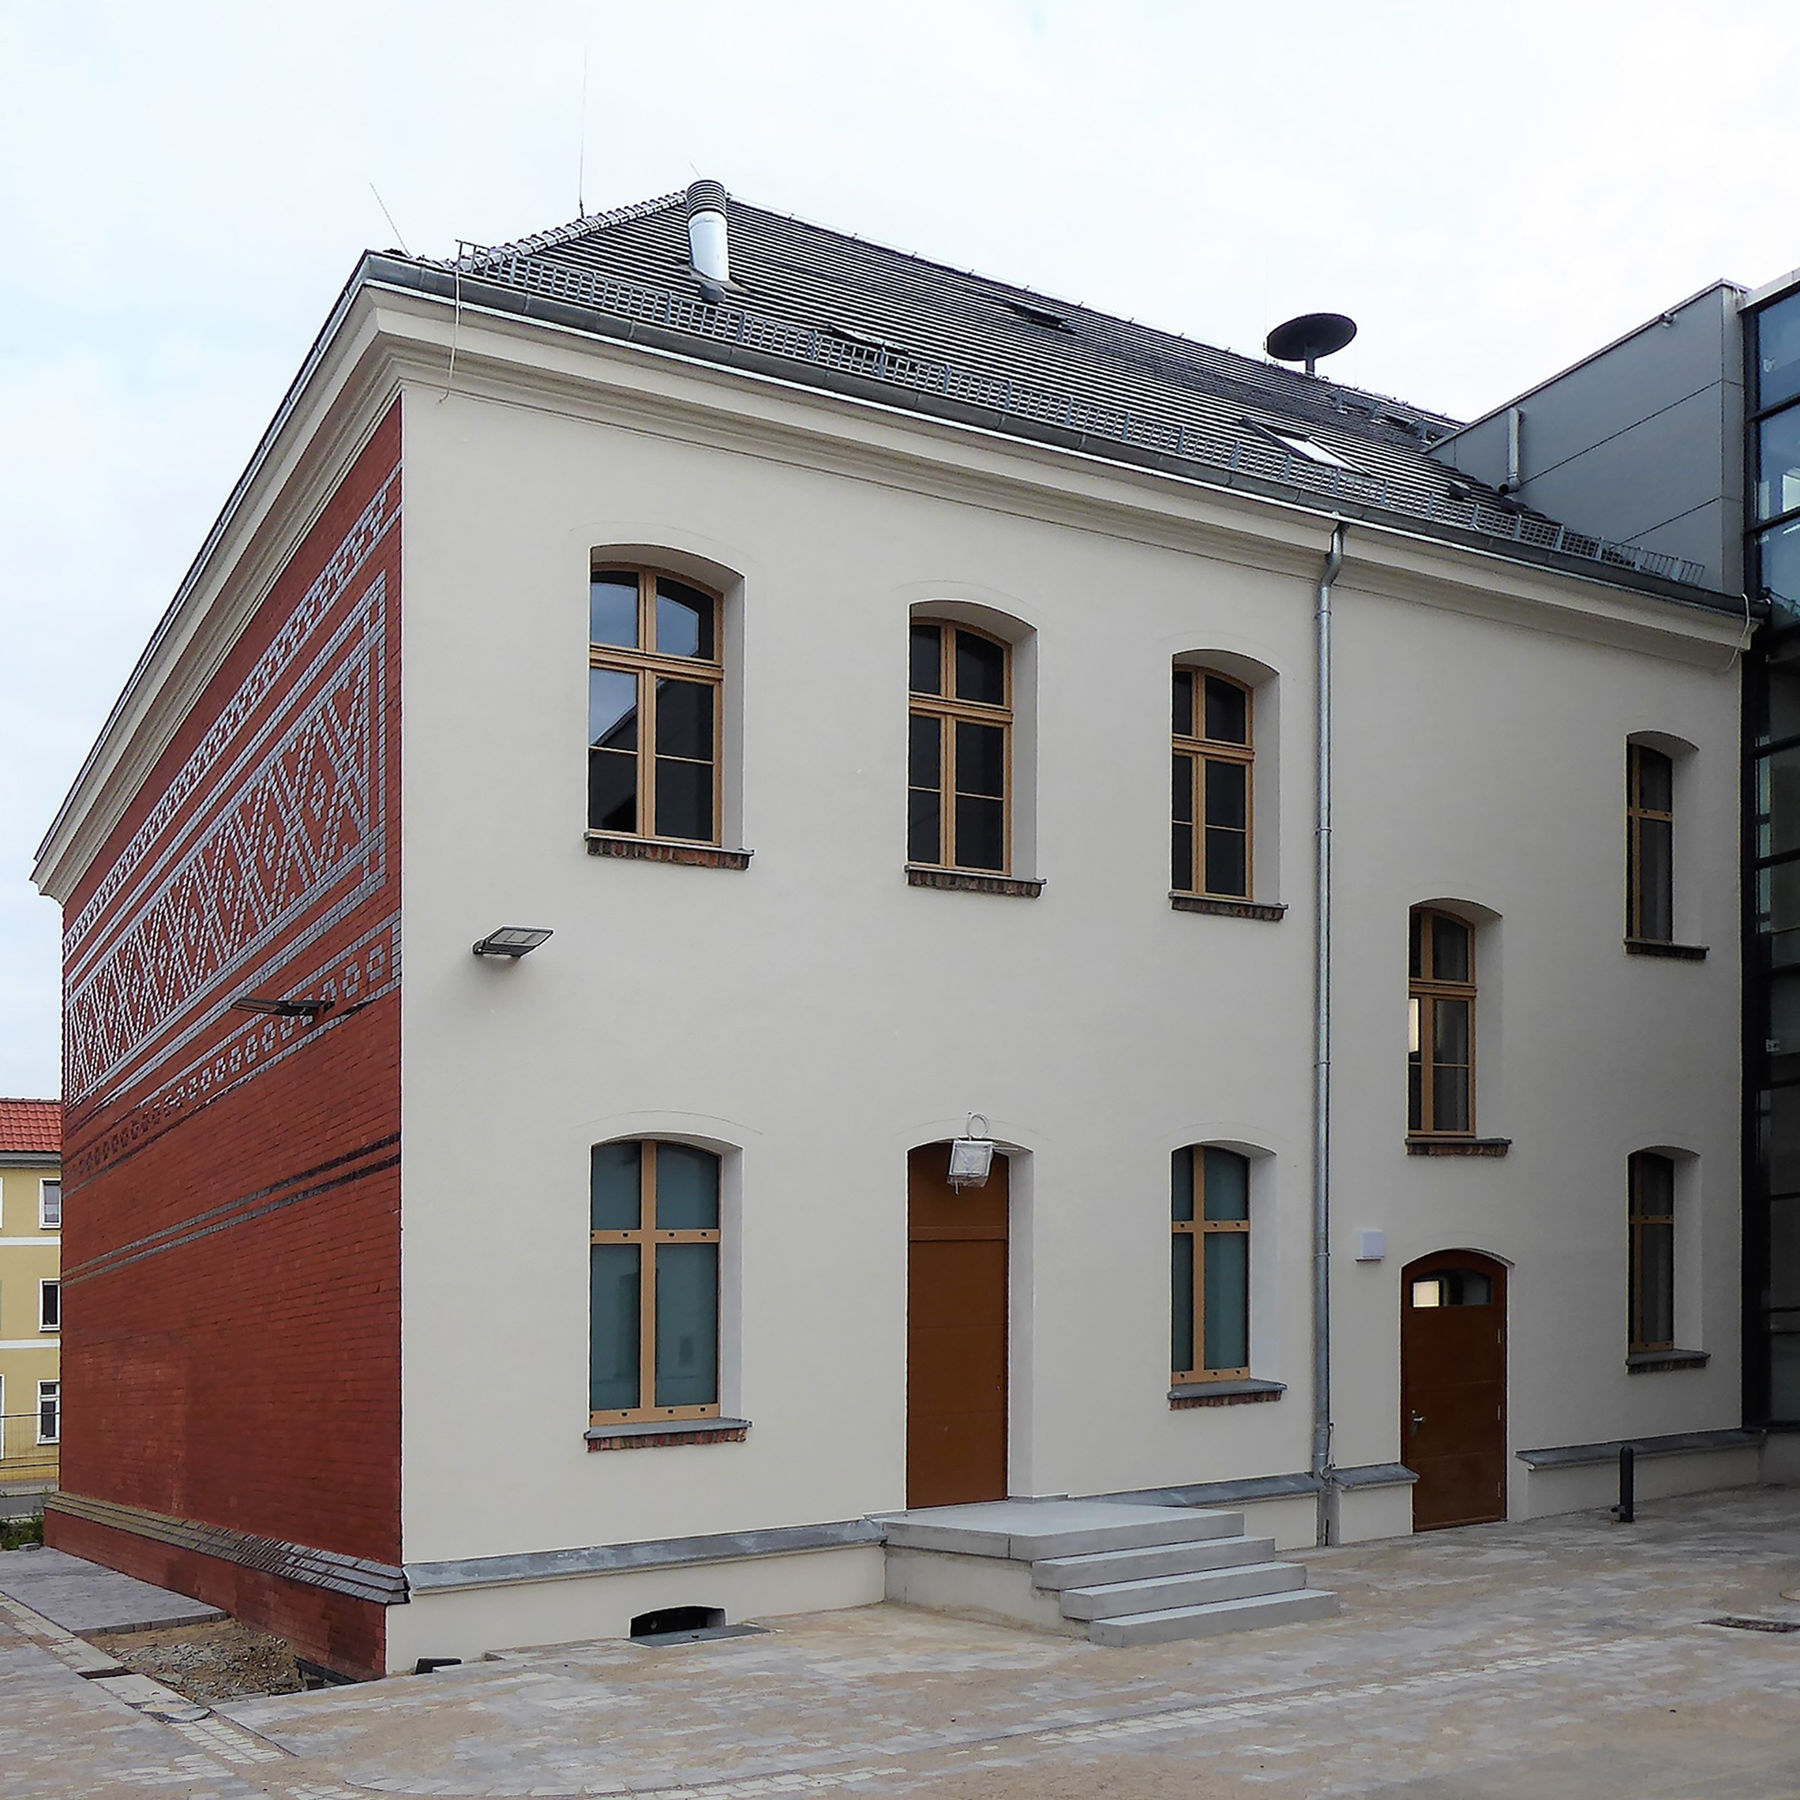 Blick auf die rückseitige Putzfassade des Haus 1 © 2020 milatz.schmidt architekten gmbh, Neubrandenburg